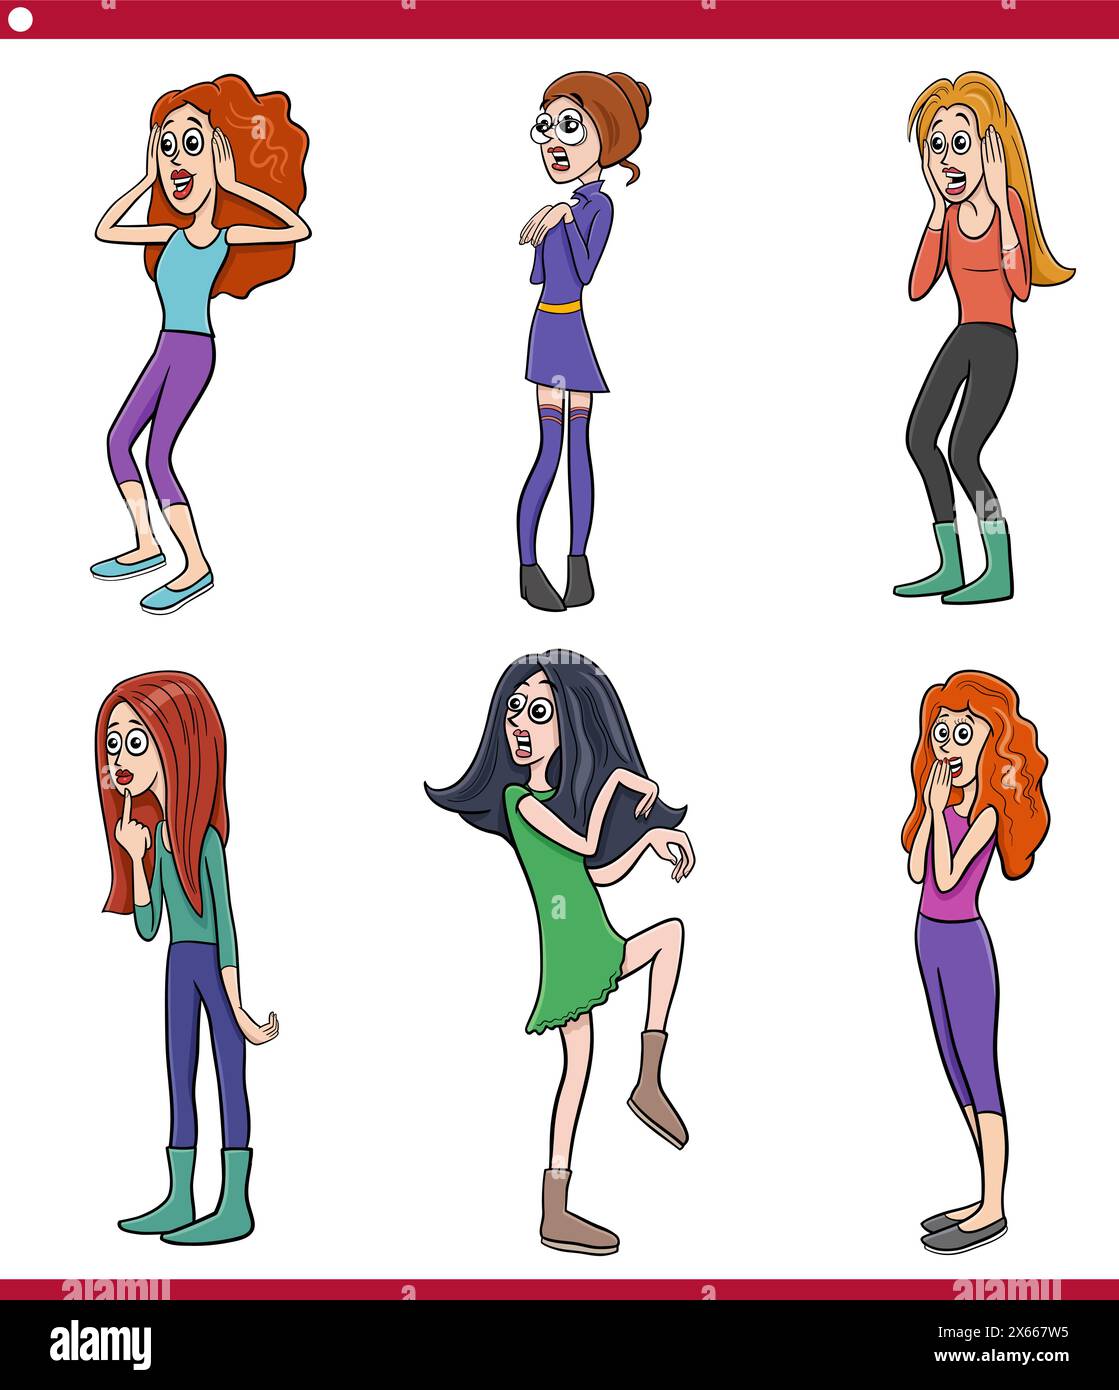 Zeichentrickillustration von lustig überraschten jungen Frauen Charaktere Karikatur Set Stock Vektor